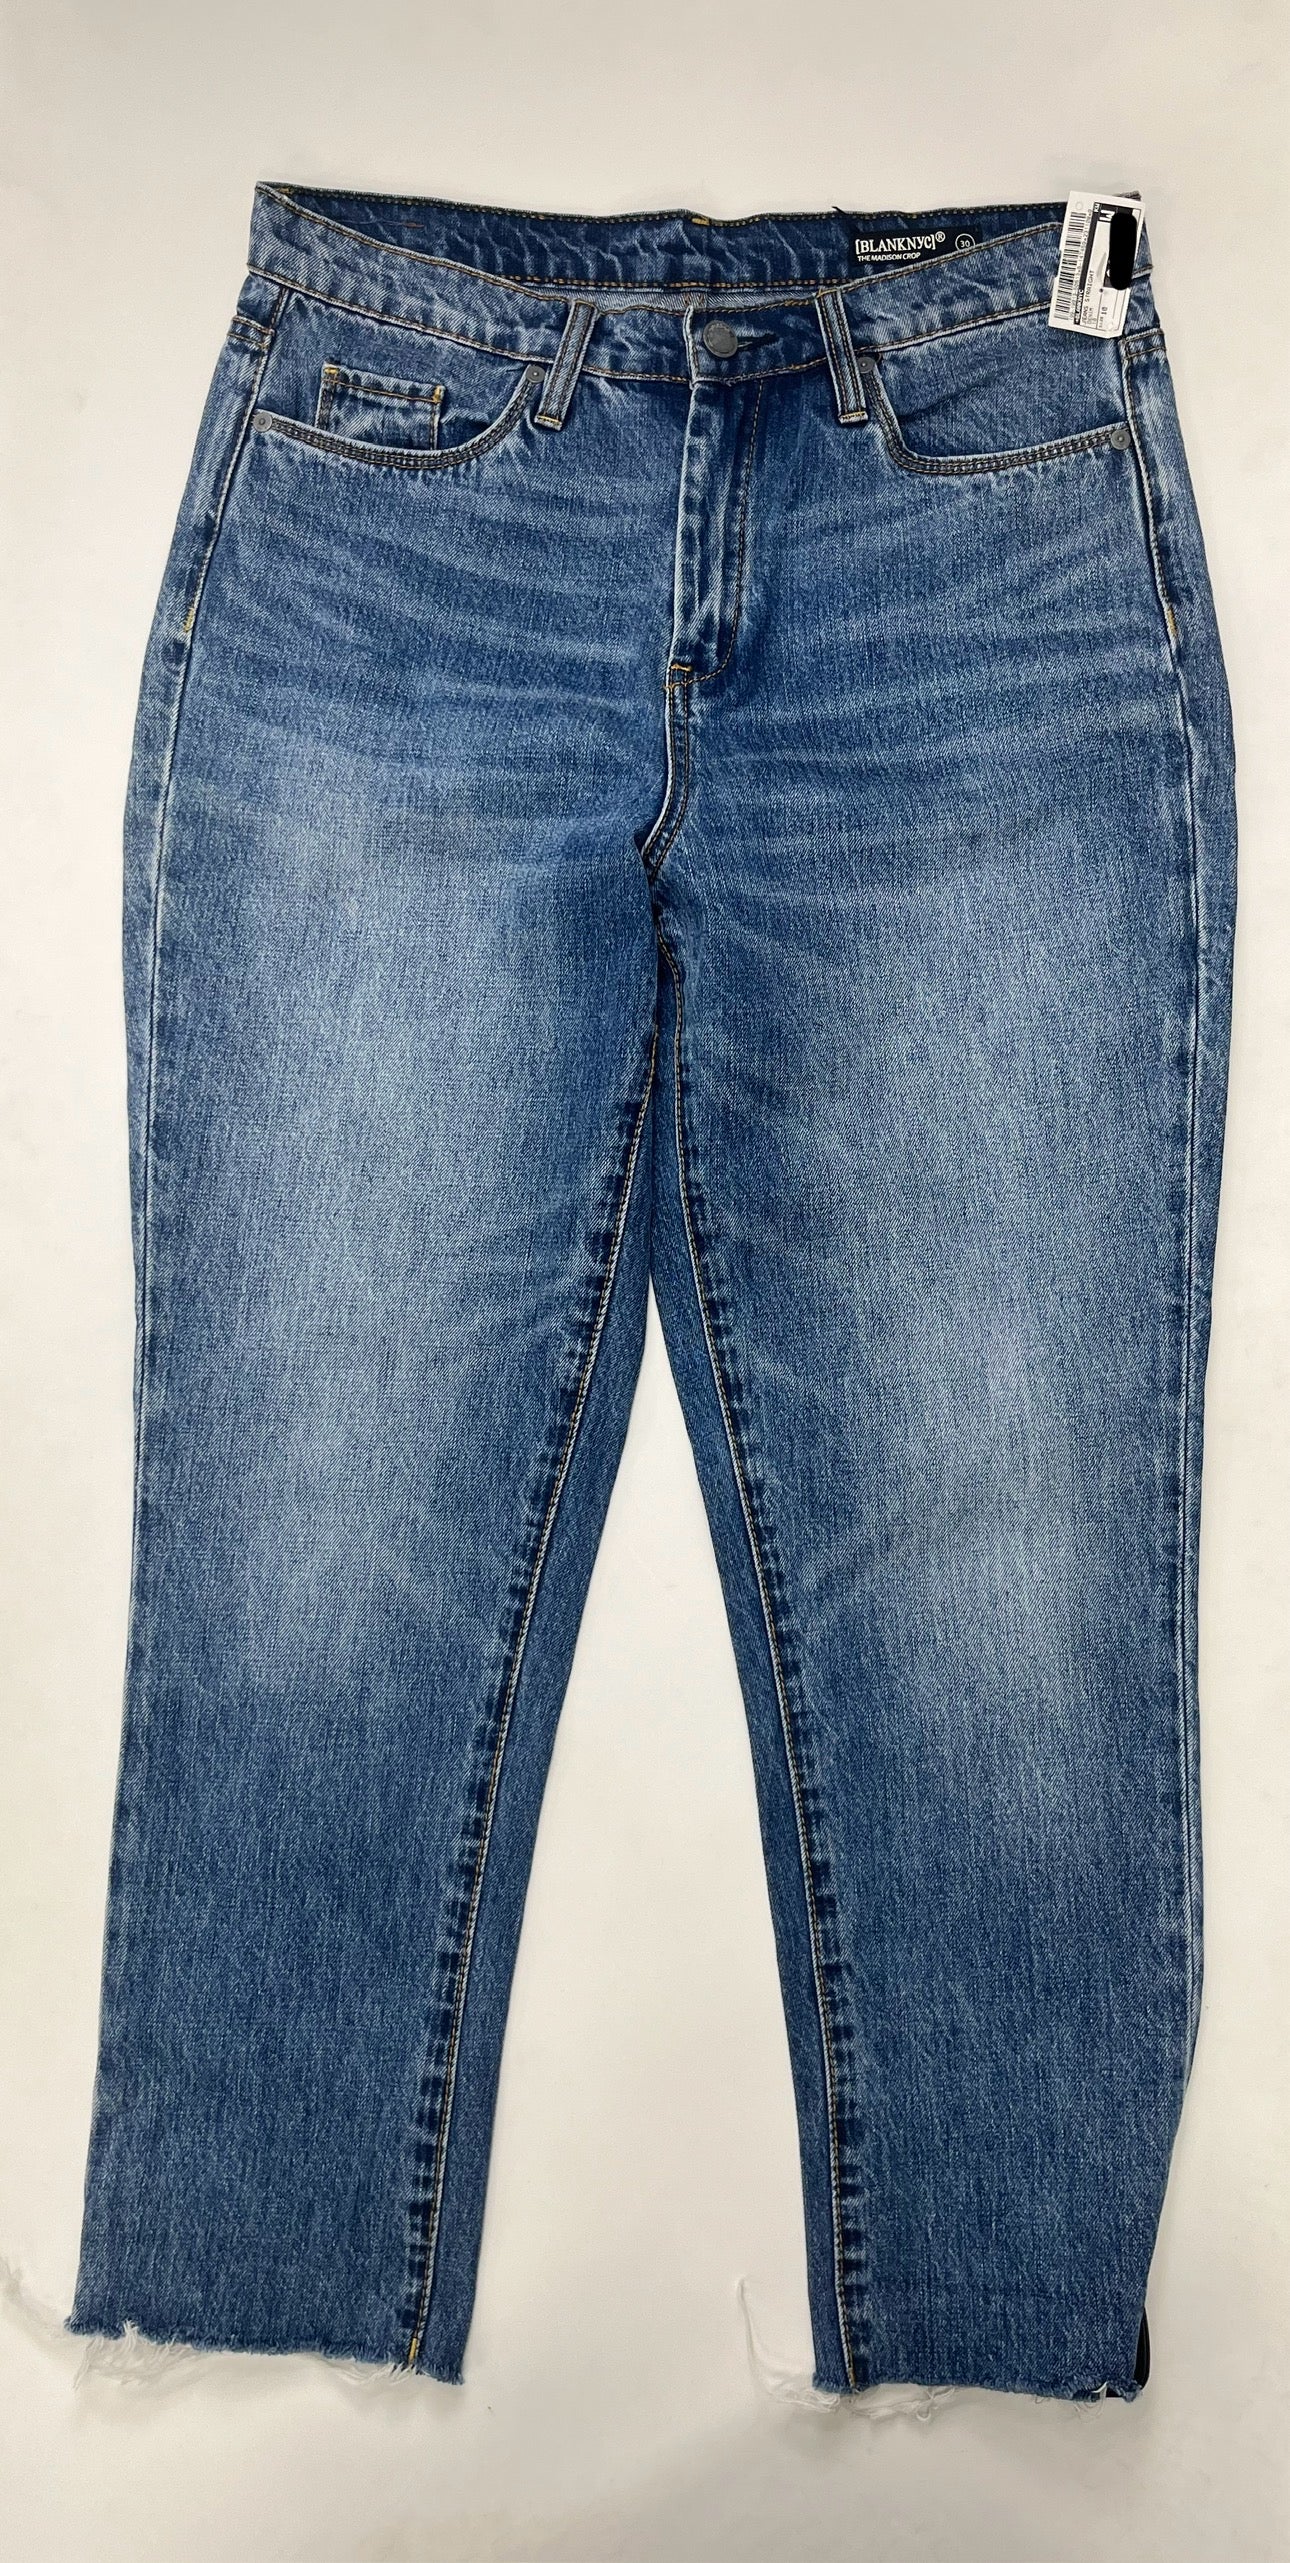 Denim Jeans Straight Blanknyc, Size 10